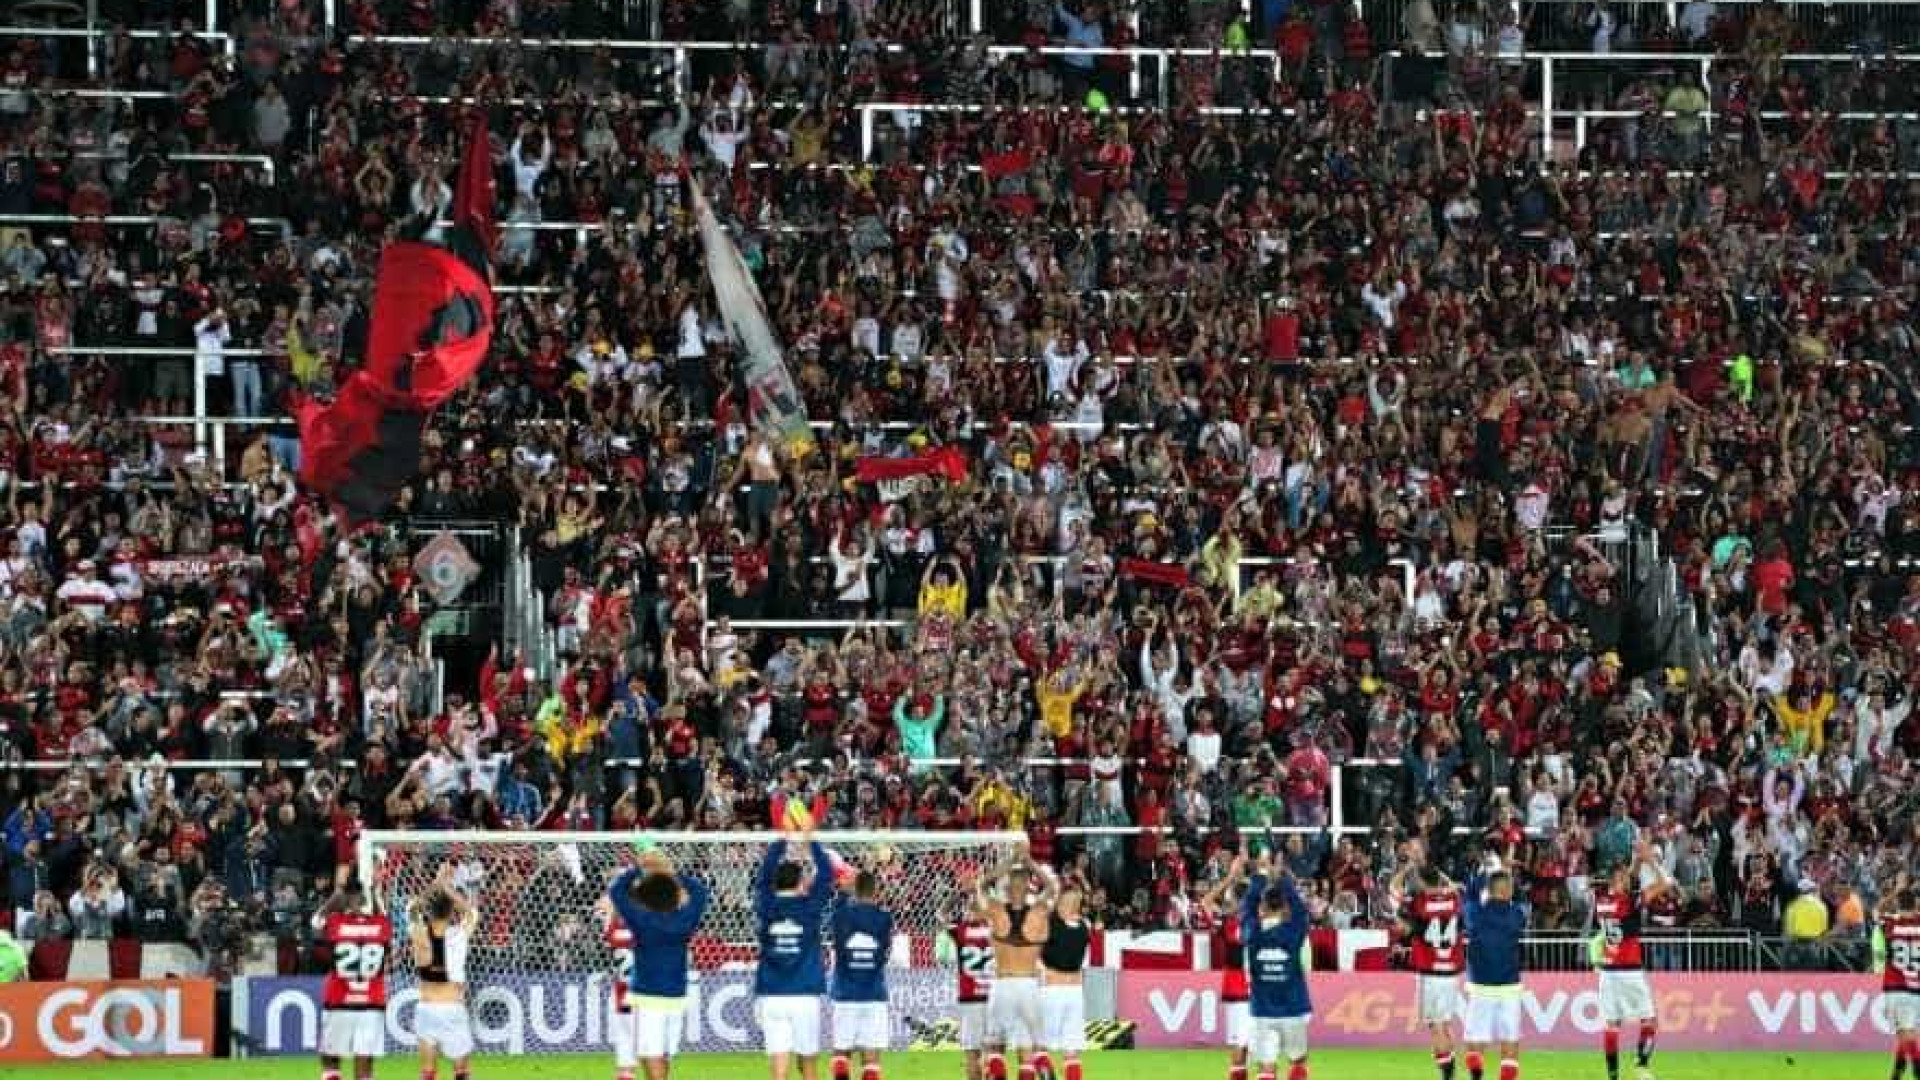 Flamengo assina opção de compra de terreno e planeja estádio próprio